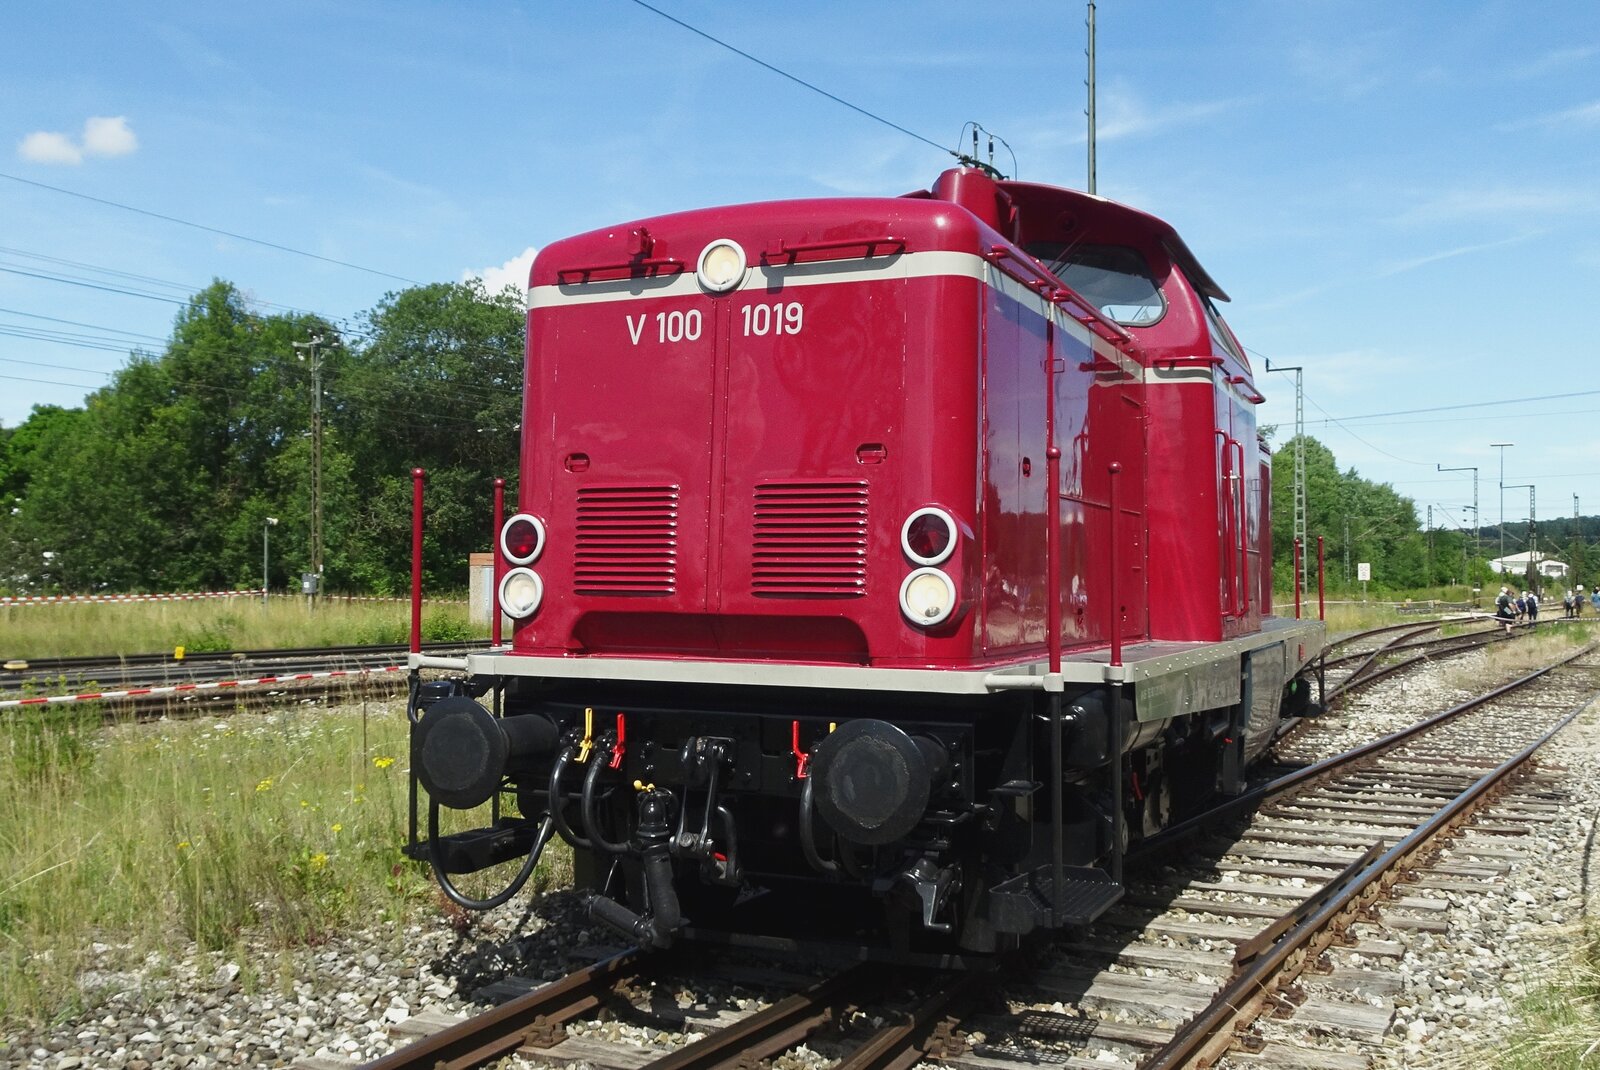 V 100 1019 steht am 9 Juli 2022 in Amstettem (Württemberg). Das Bild wurde vom offenbarer Platz gemacht.